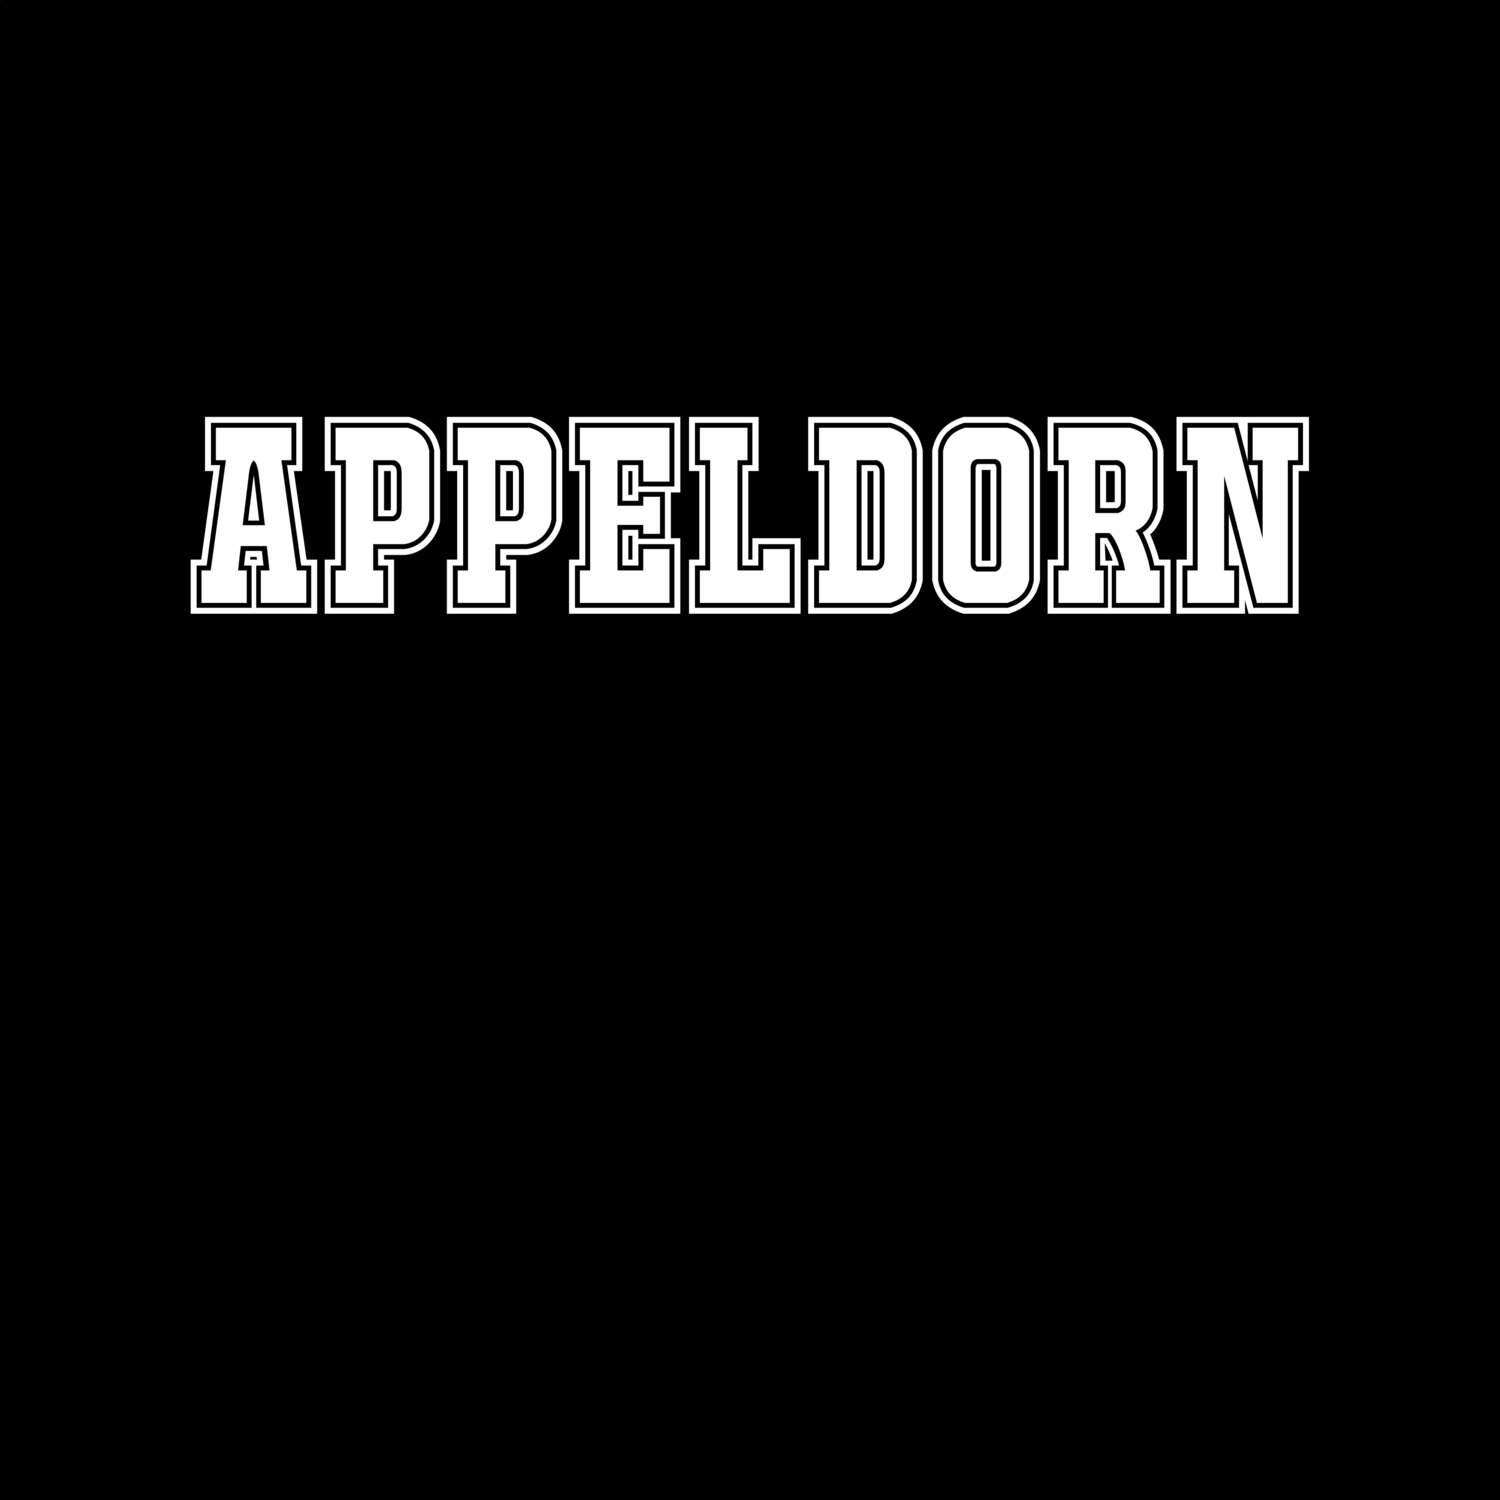 Appeldorn T-Shirt »Classic«